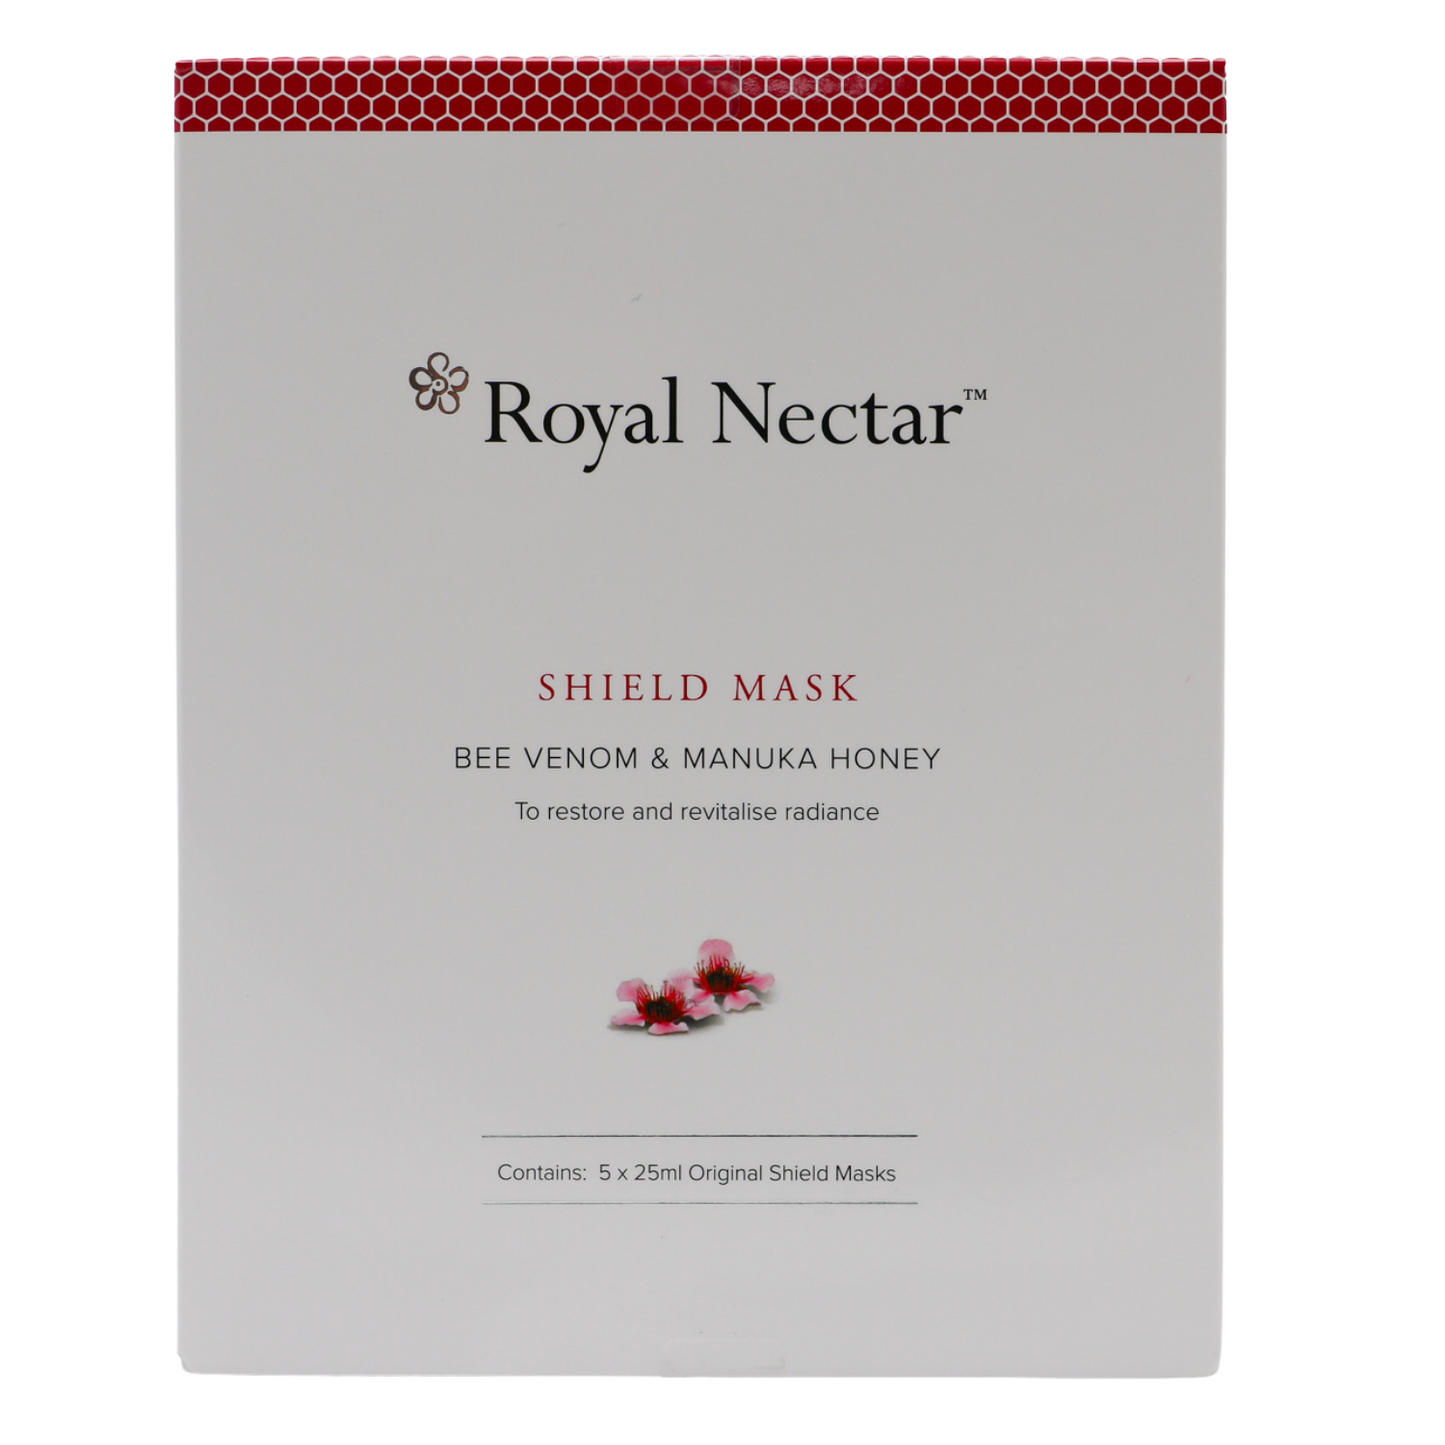 Royal Nectar Shield Mask